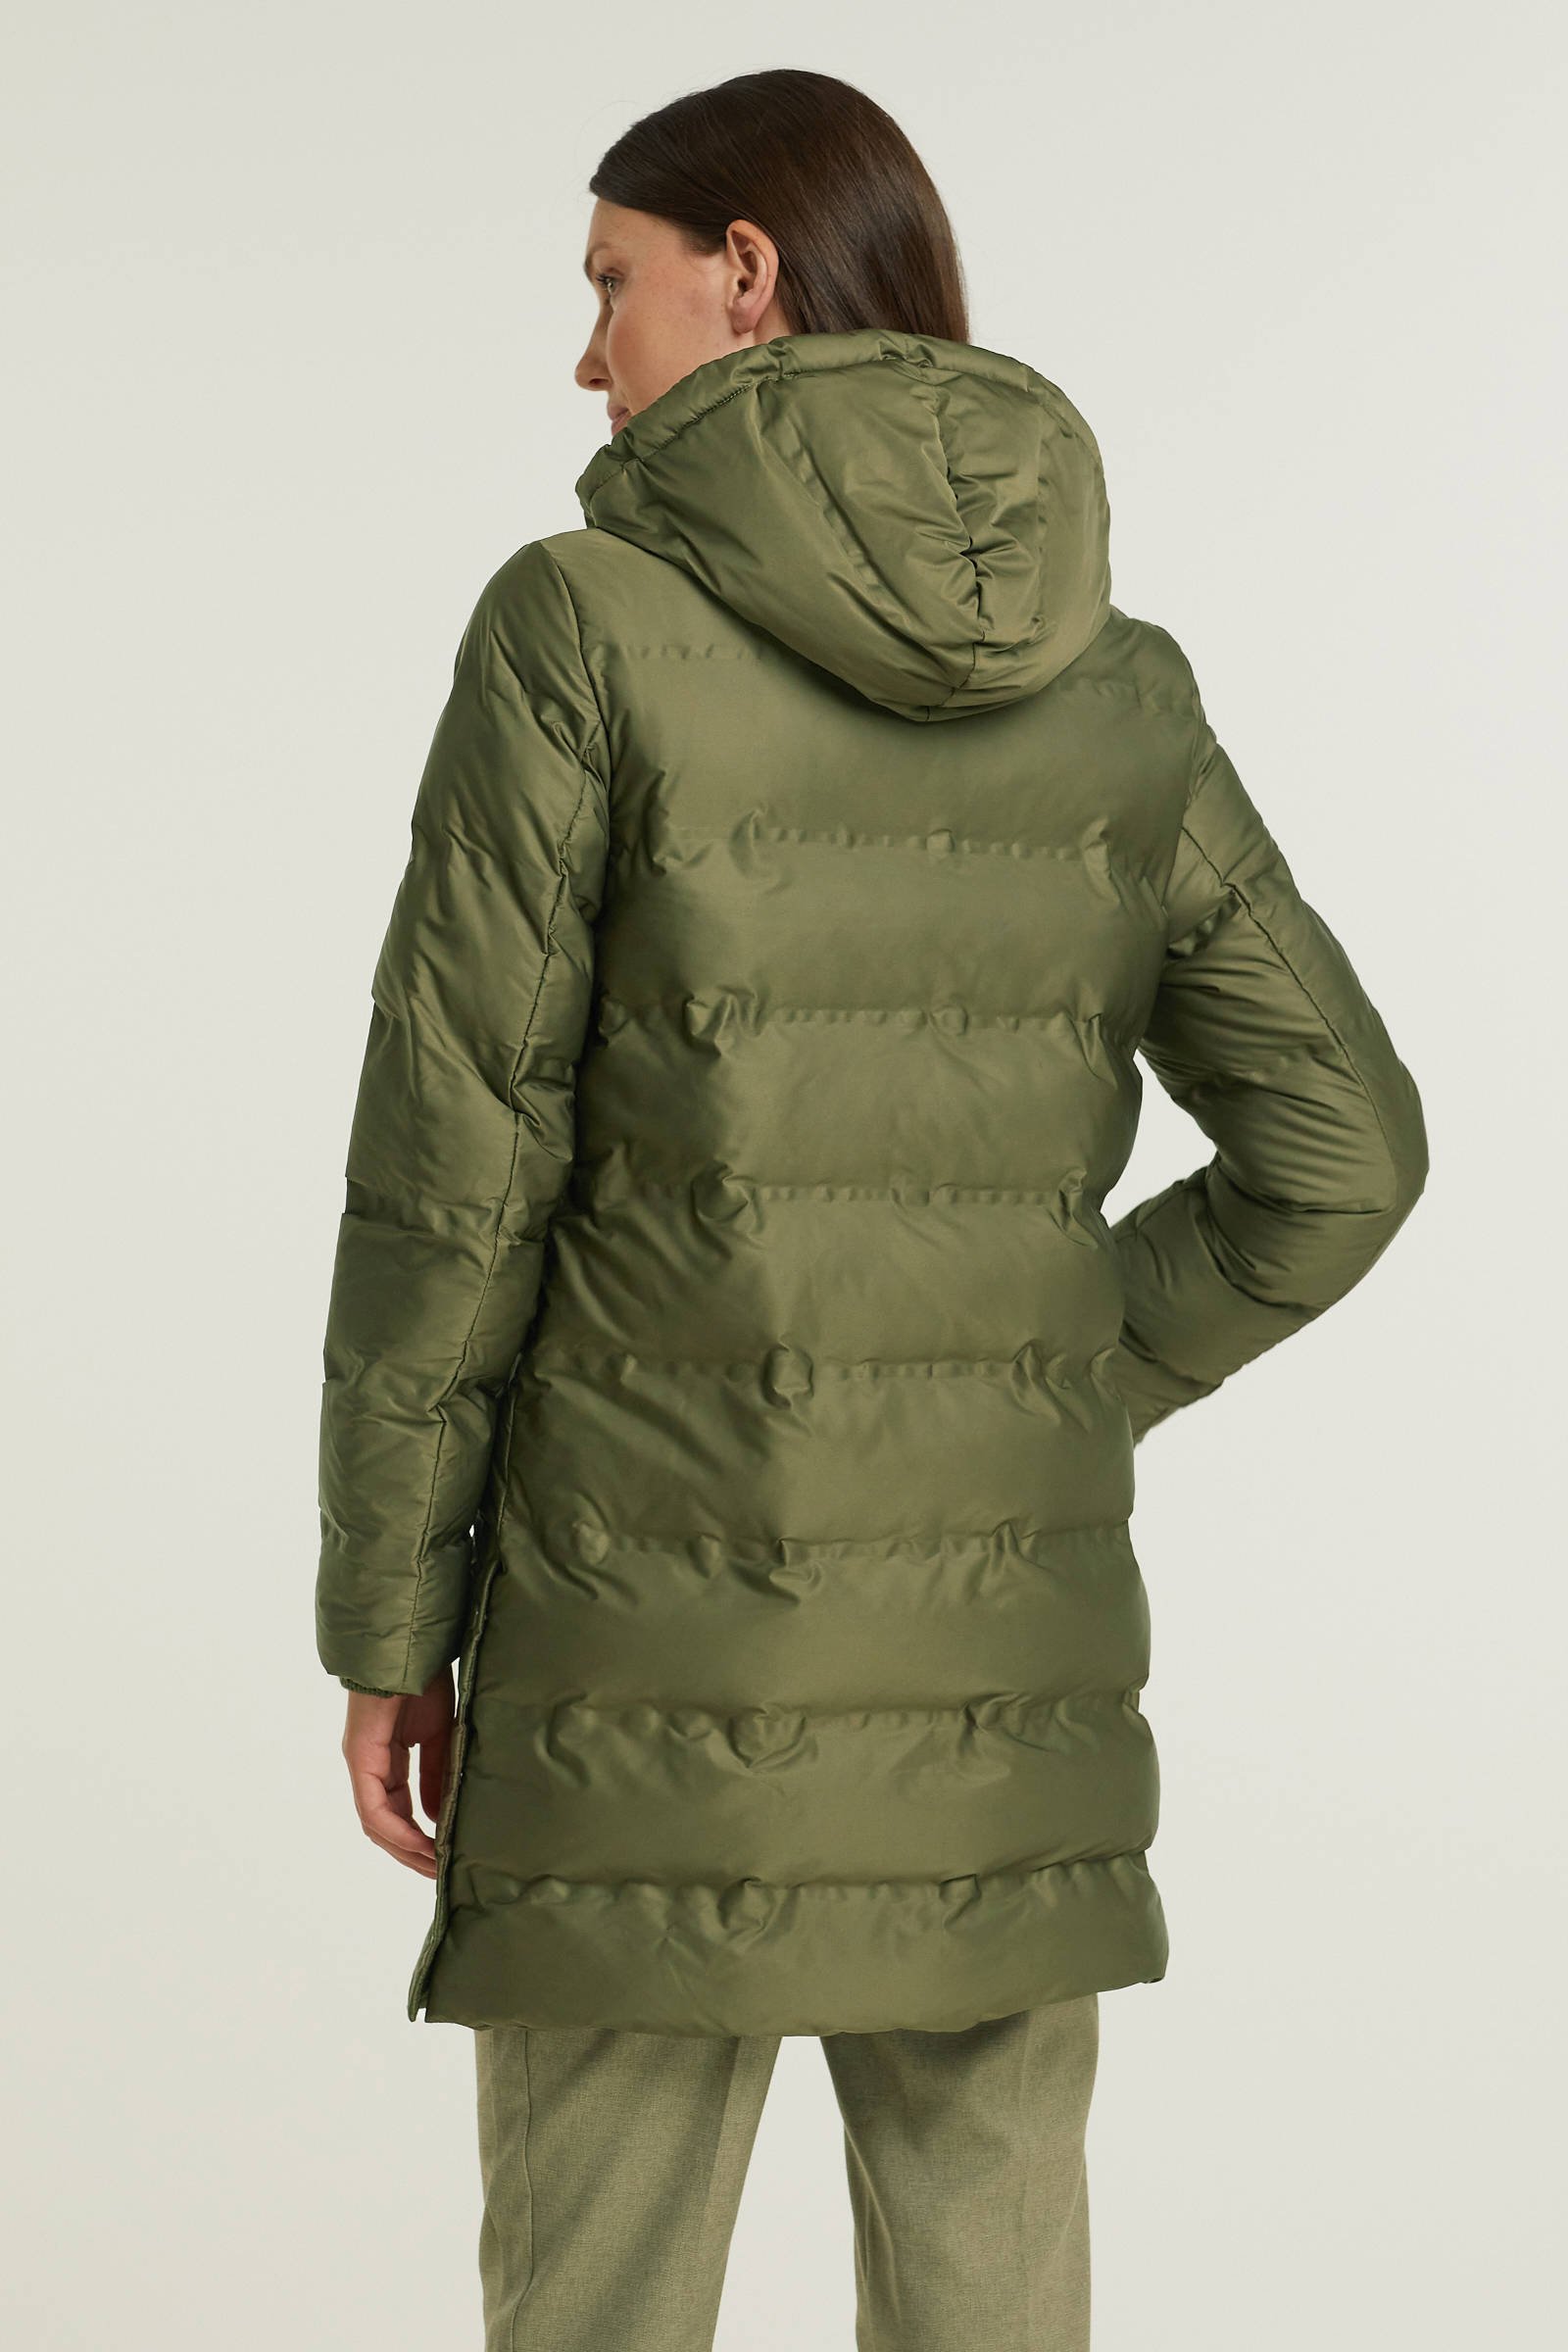 ESPRIT Women Collection gewatteerde jas groen online kopen